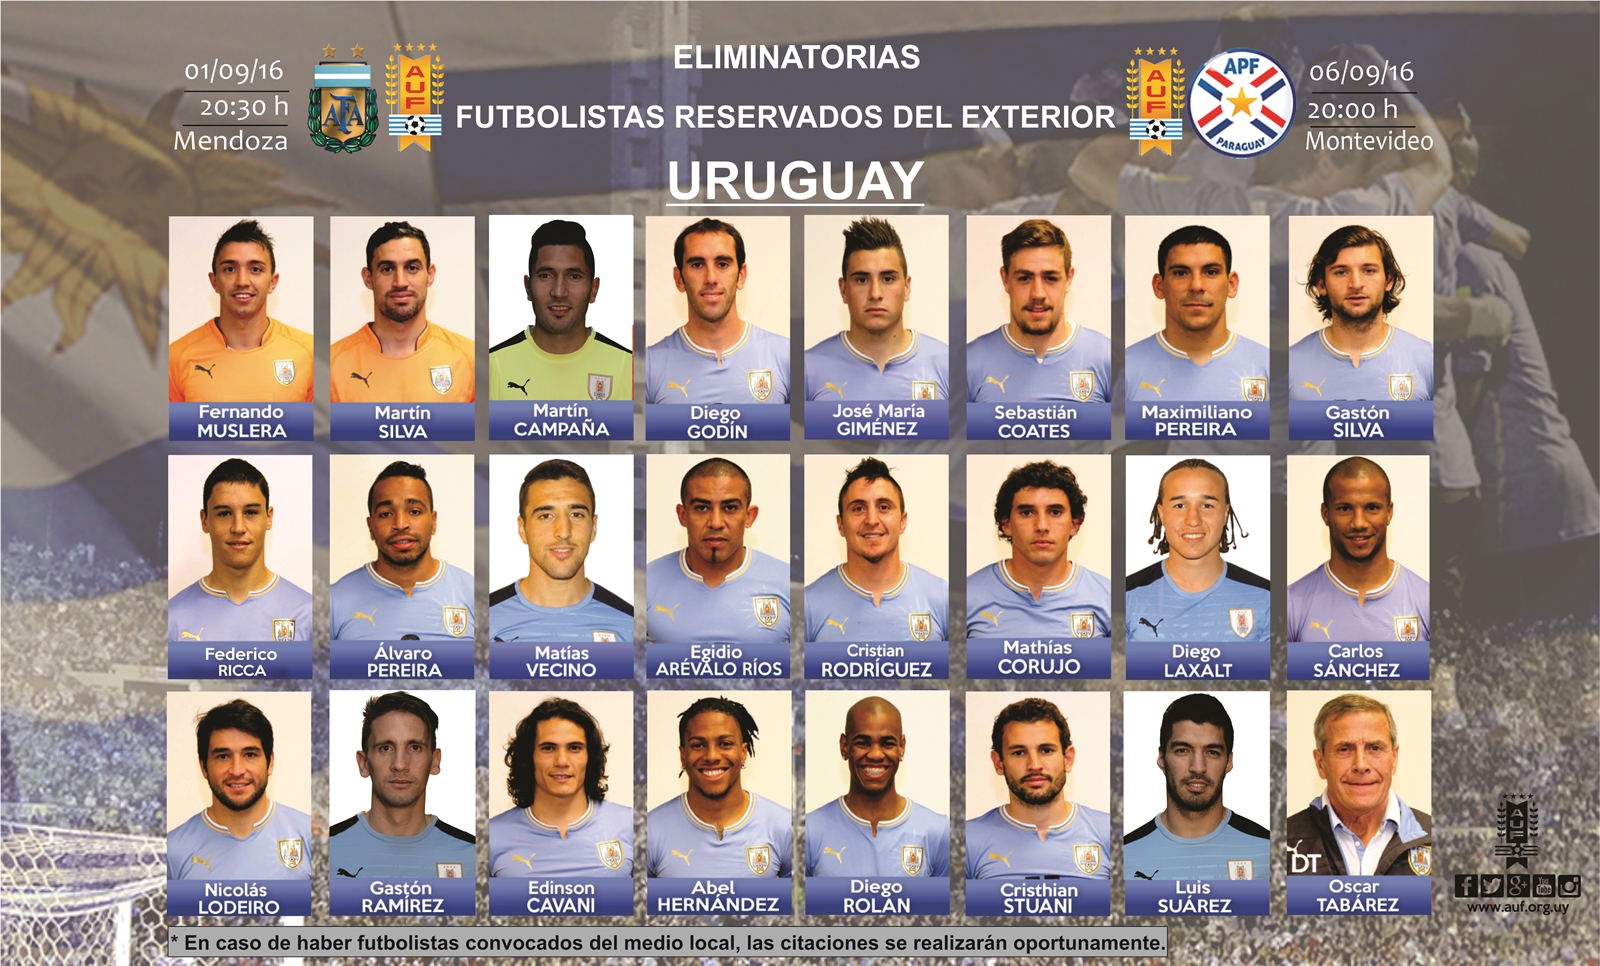 Futbolistas Reservados del exterior vs Argentina y Paraguay 2016